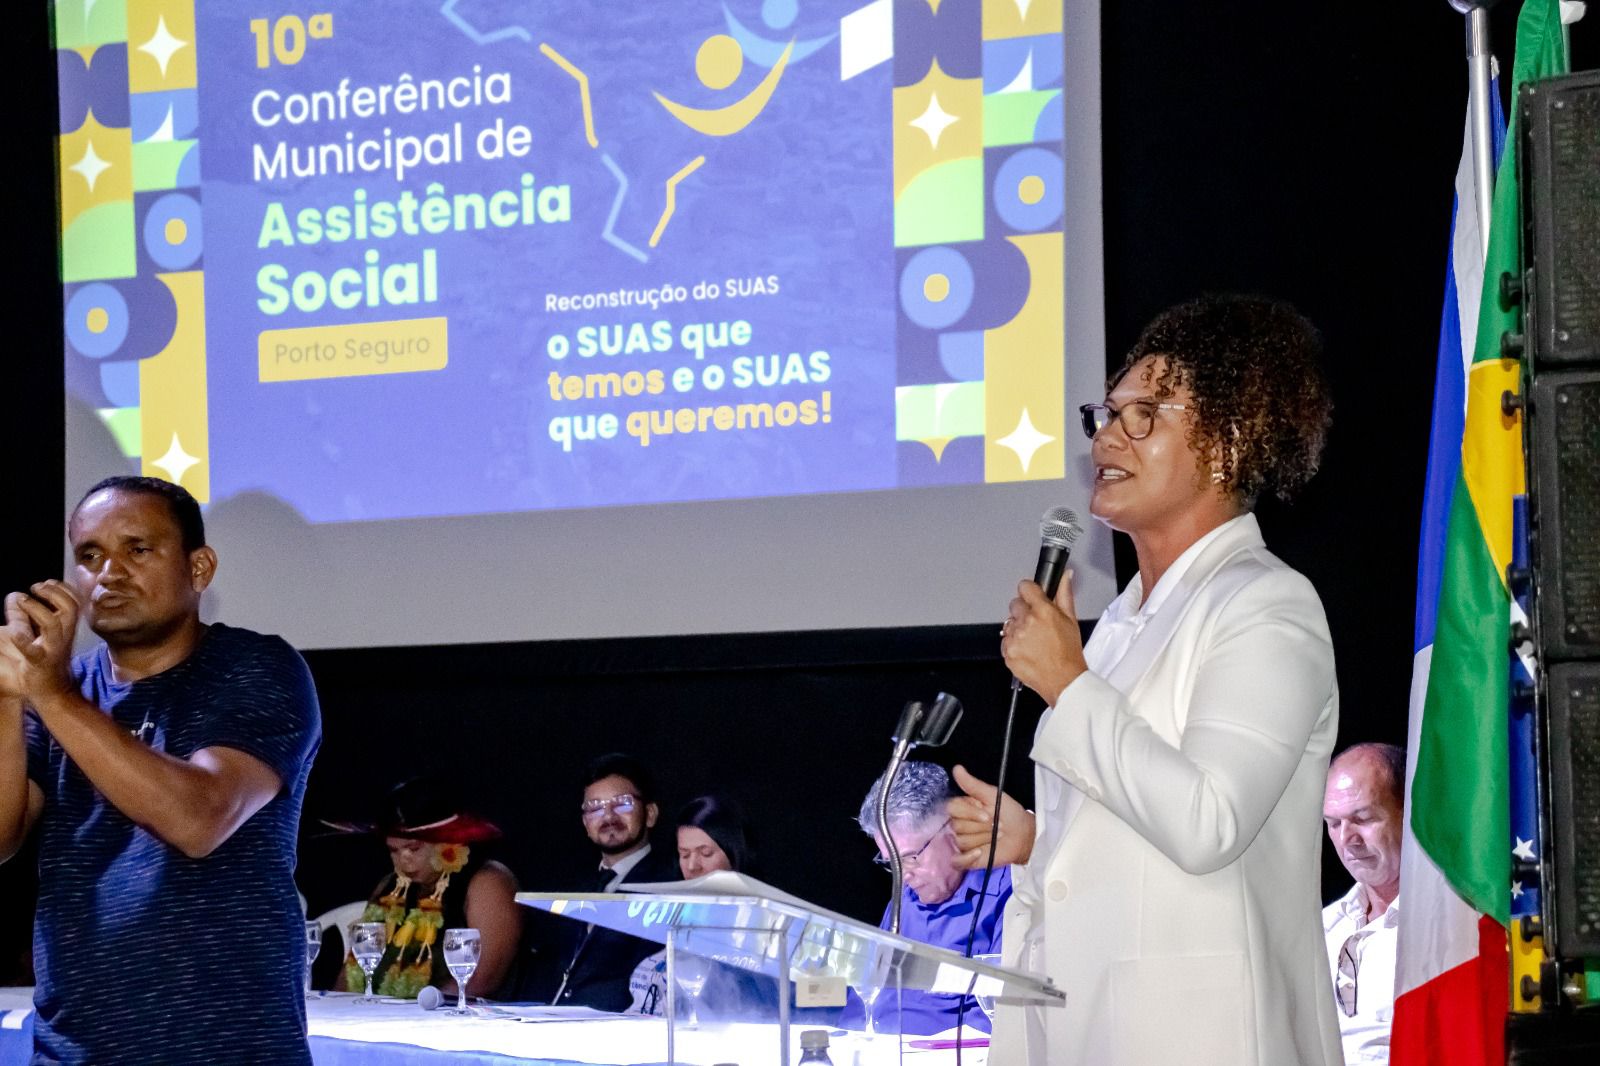 Conferência Municipal de Assistência Social reúne mais de 500 participantes 63